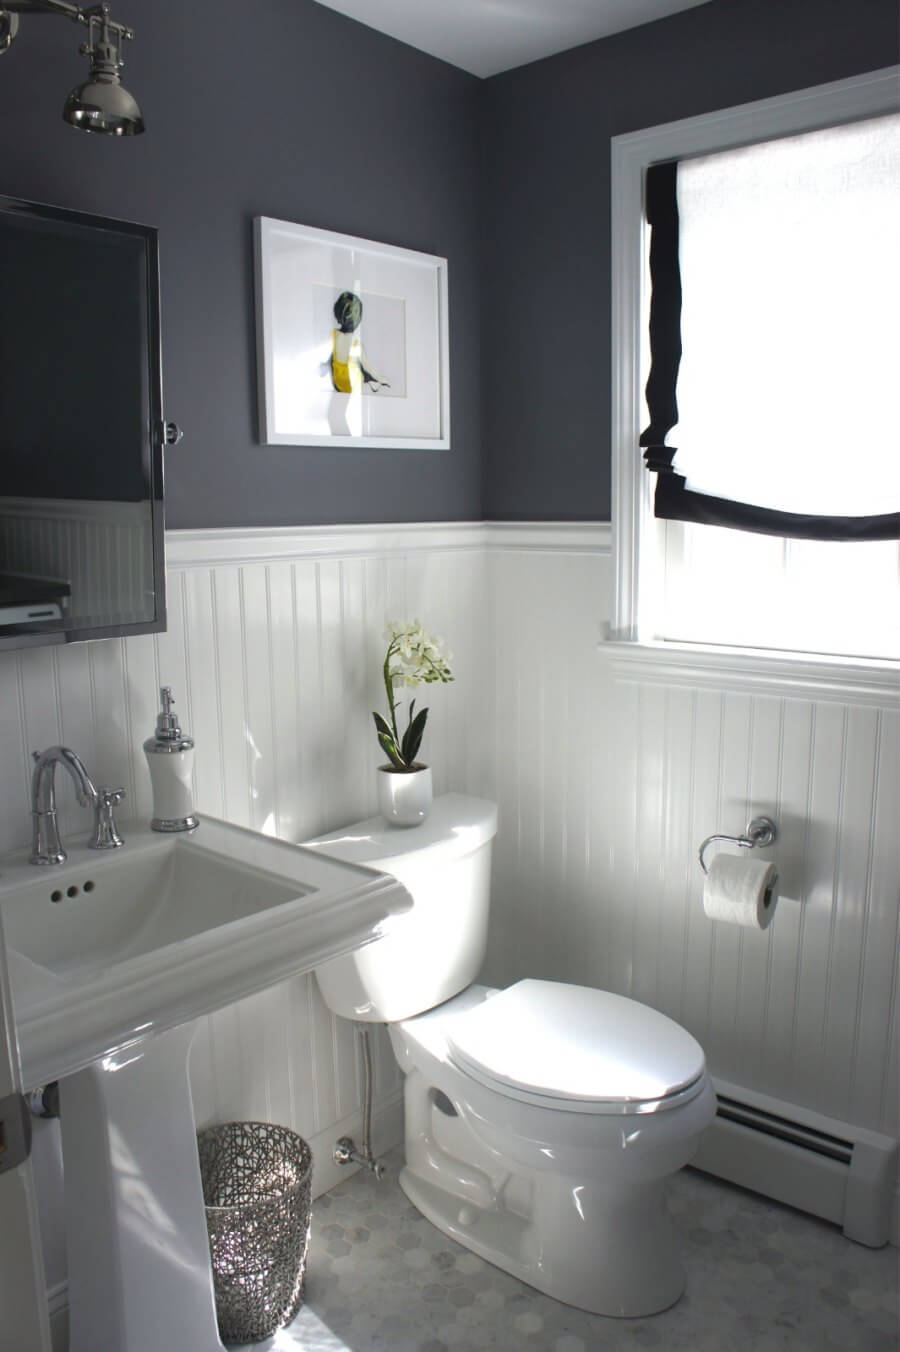 Beadboard paneling in a grey bathroom | Bathroom Wainscoting: Beadboard Panels in the Bathroom Design | FarmFoodFamily.com